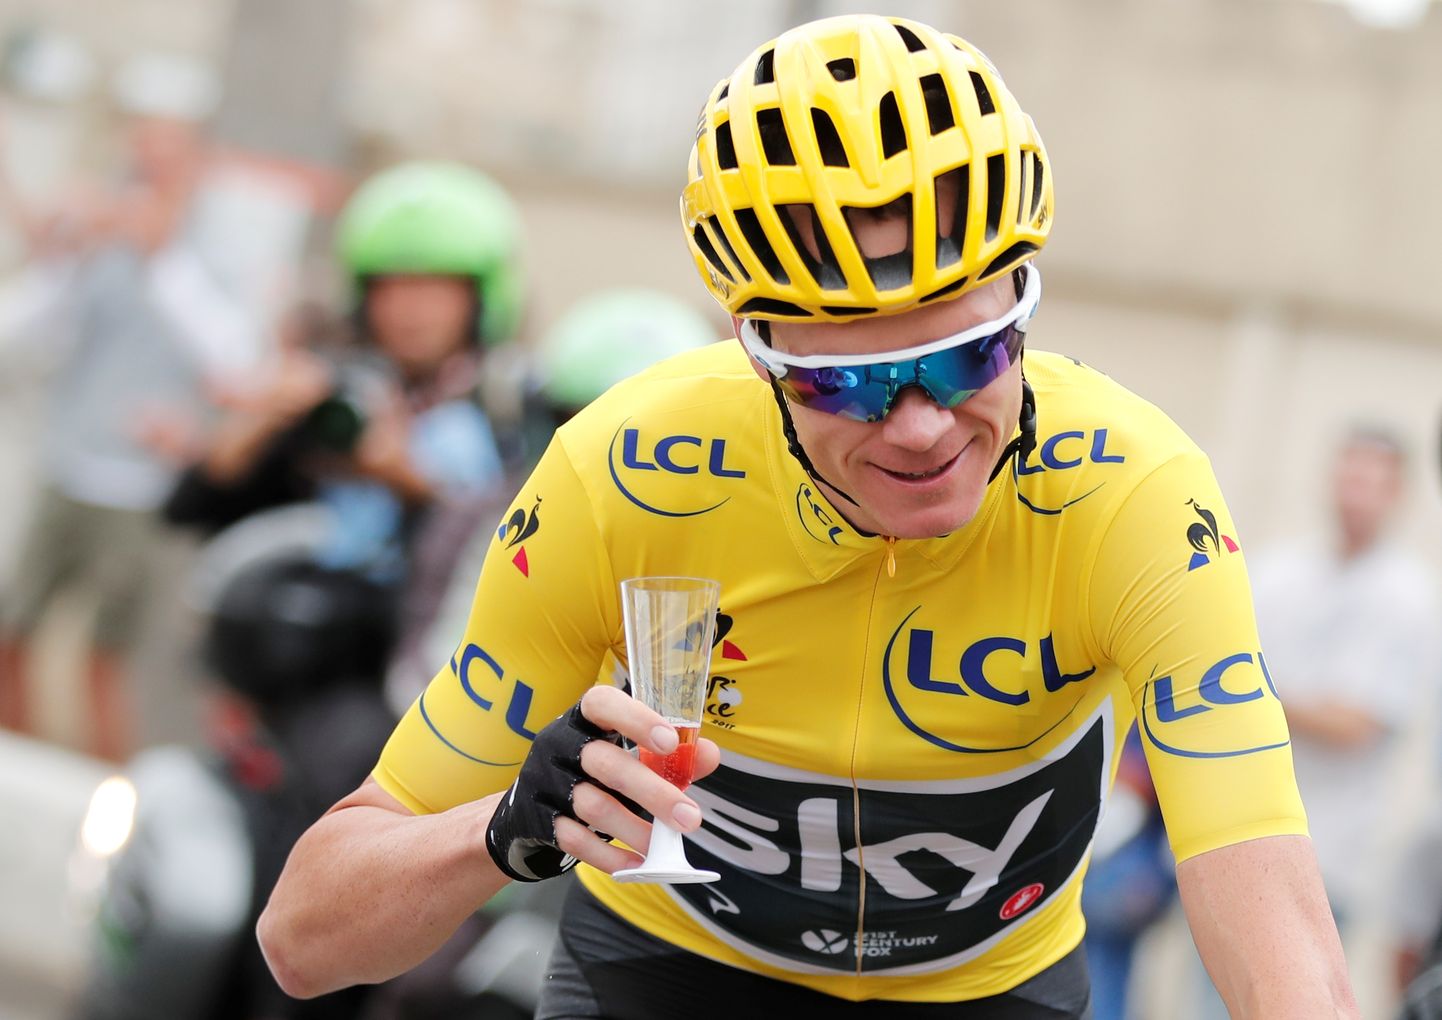 Chris Froome ei pruugigi tänavu Tour de France'ile mullust võitu kaitsma pääseda.